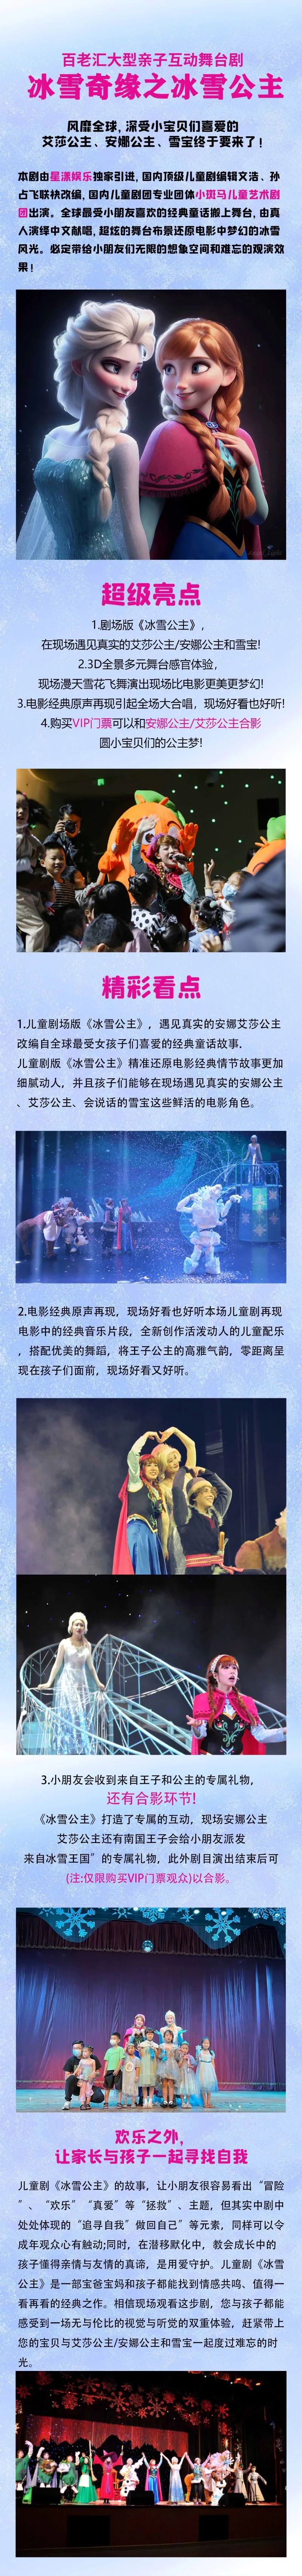 儿童节专场  亲子互动舞台剧《冰雪奇缘之冰雪公主》